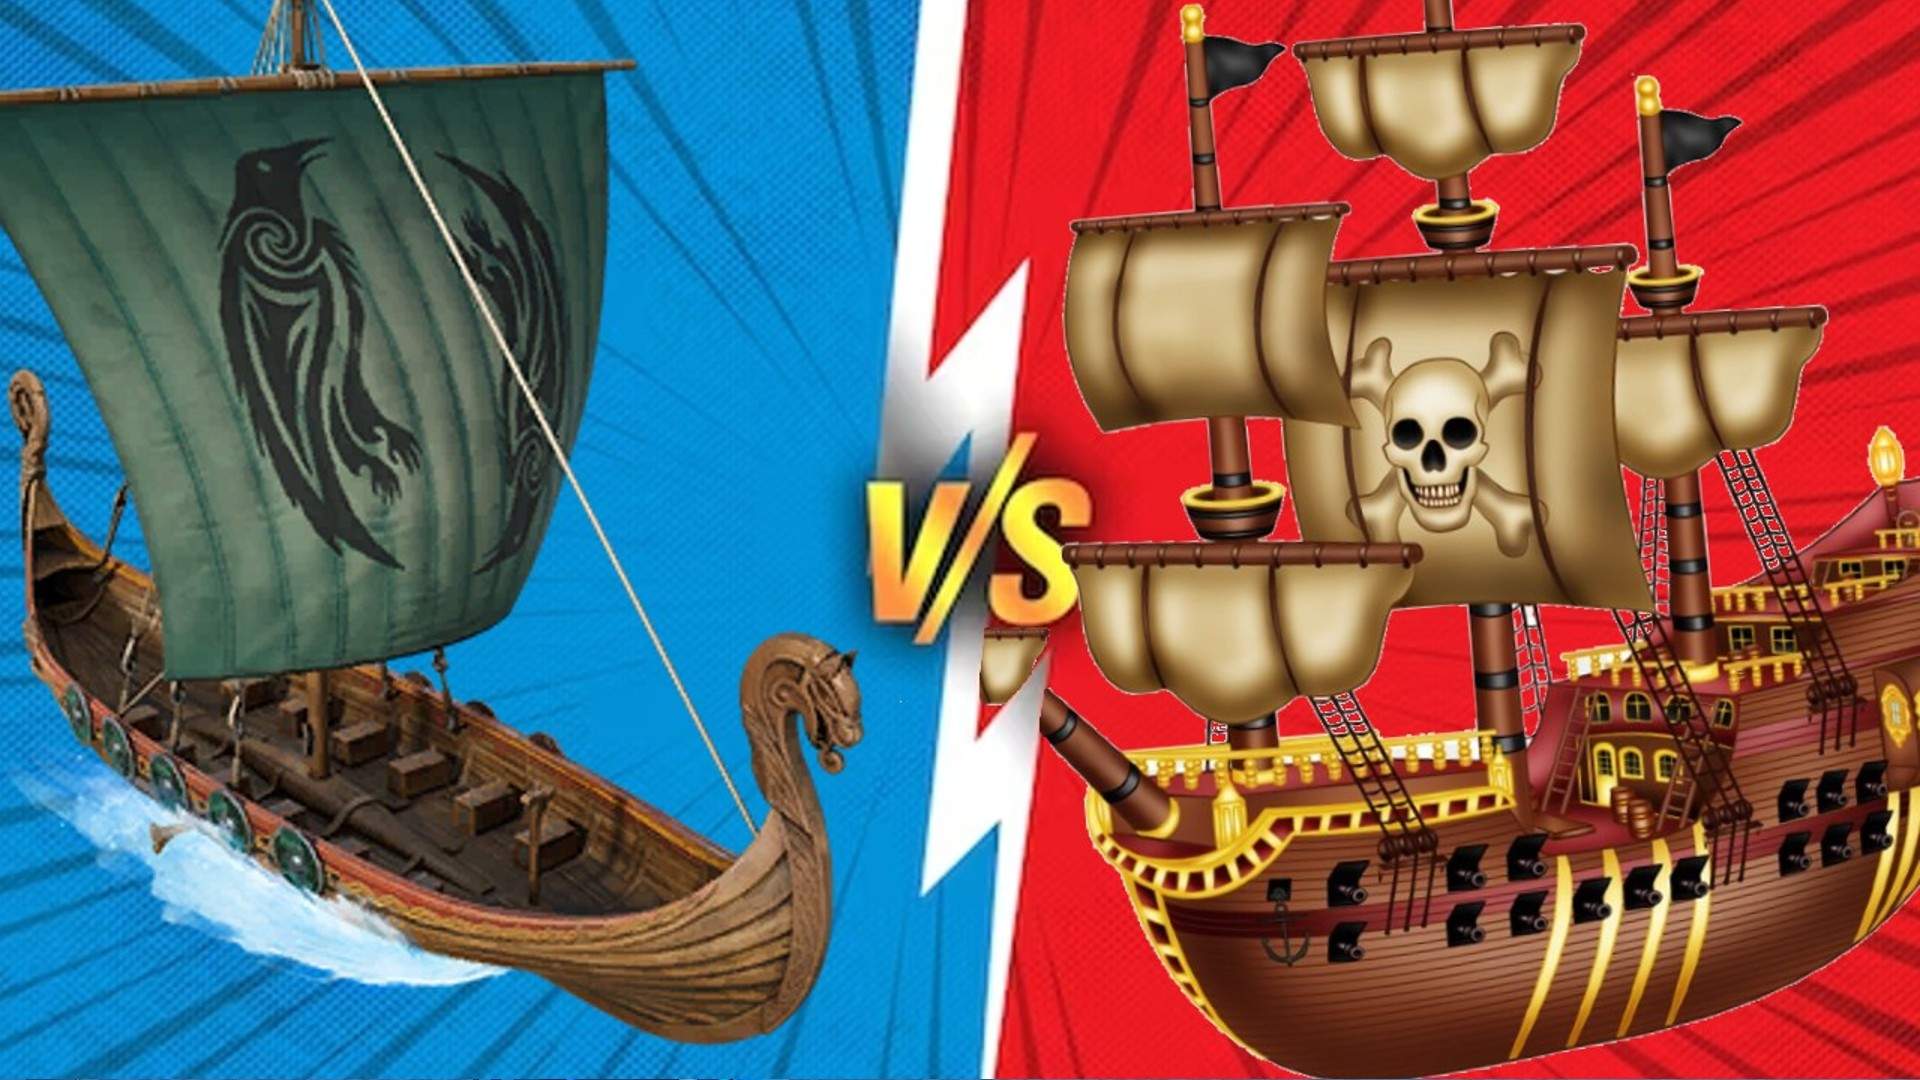 Pirate's VS Viking's 4v4 BOXFIGHT